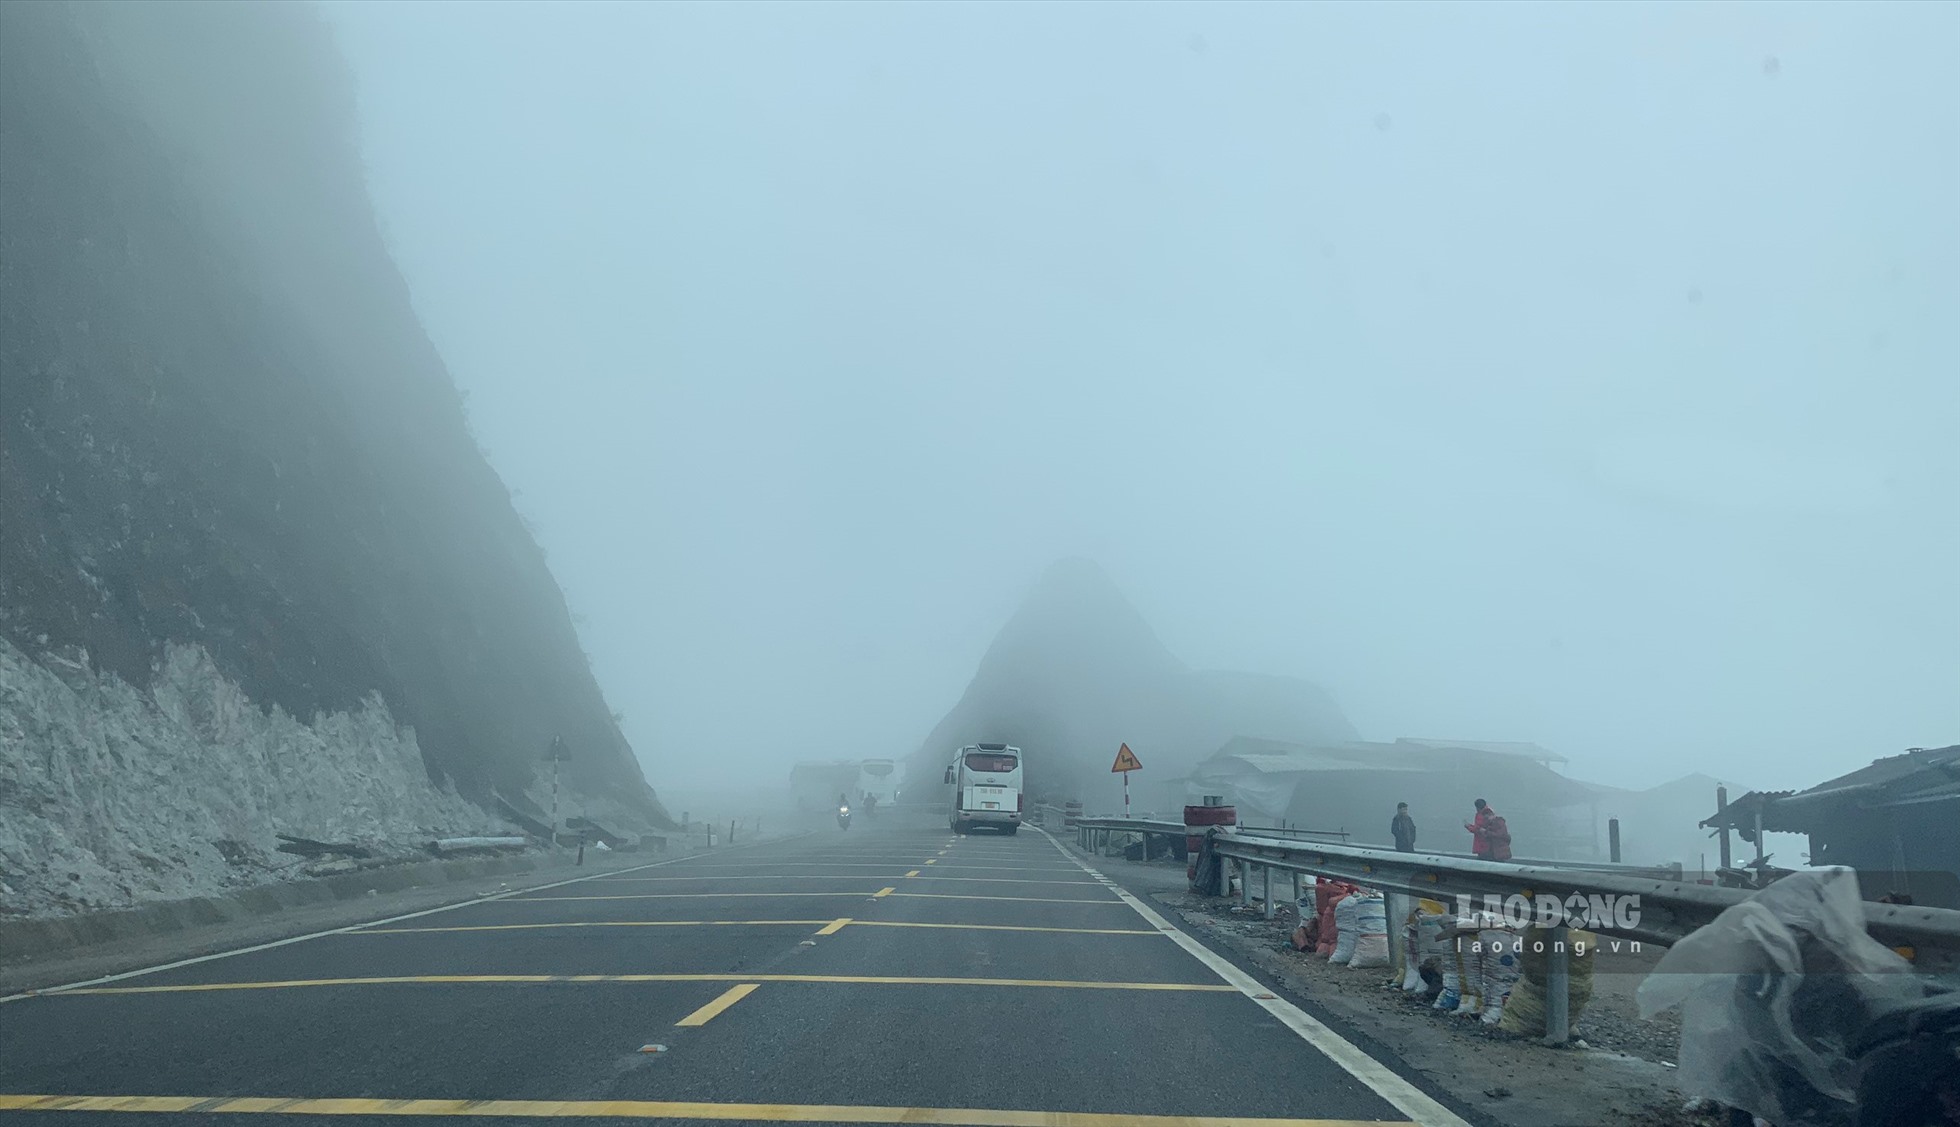 Quốc lộ 6 thường xuyên có sương mù nên tiềm ẩn nguy cơ tai nạn giao thông rất cao. Ảnh: Minh Nguyễn.